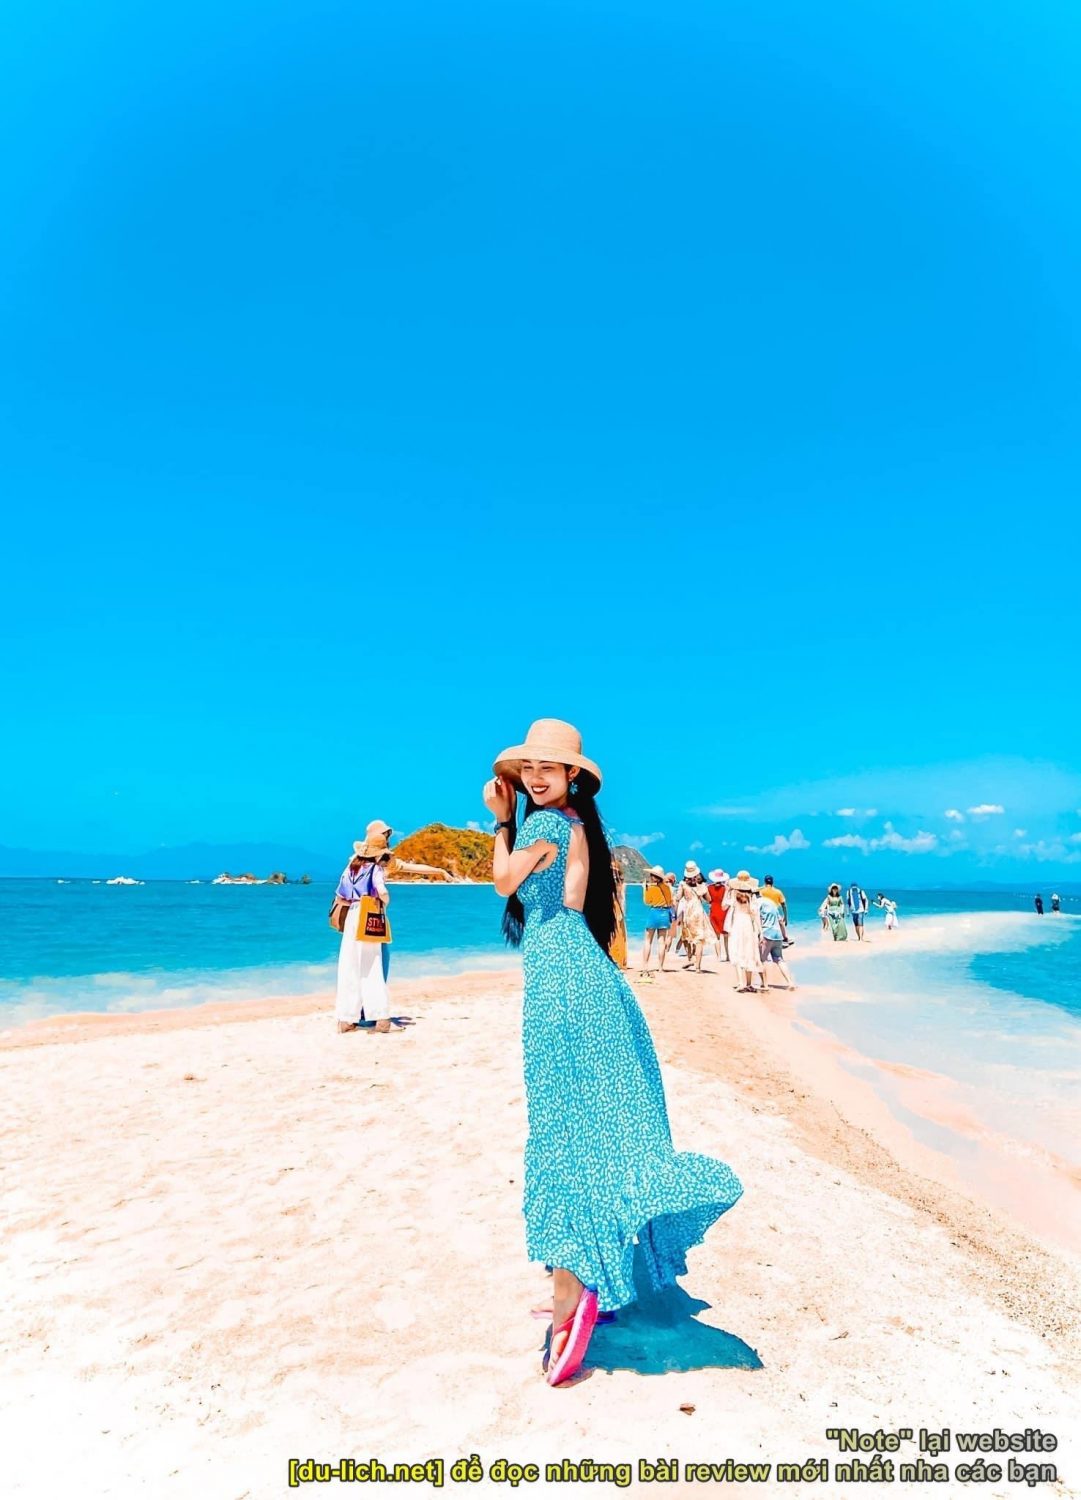 Hình ảnh con đường cát nổi trên mặt biển đảo Điệp Sơn